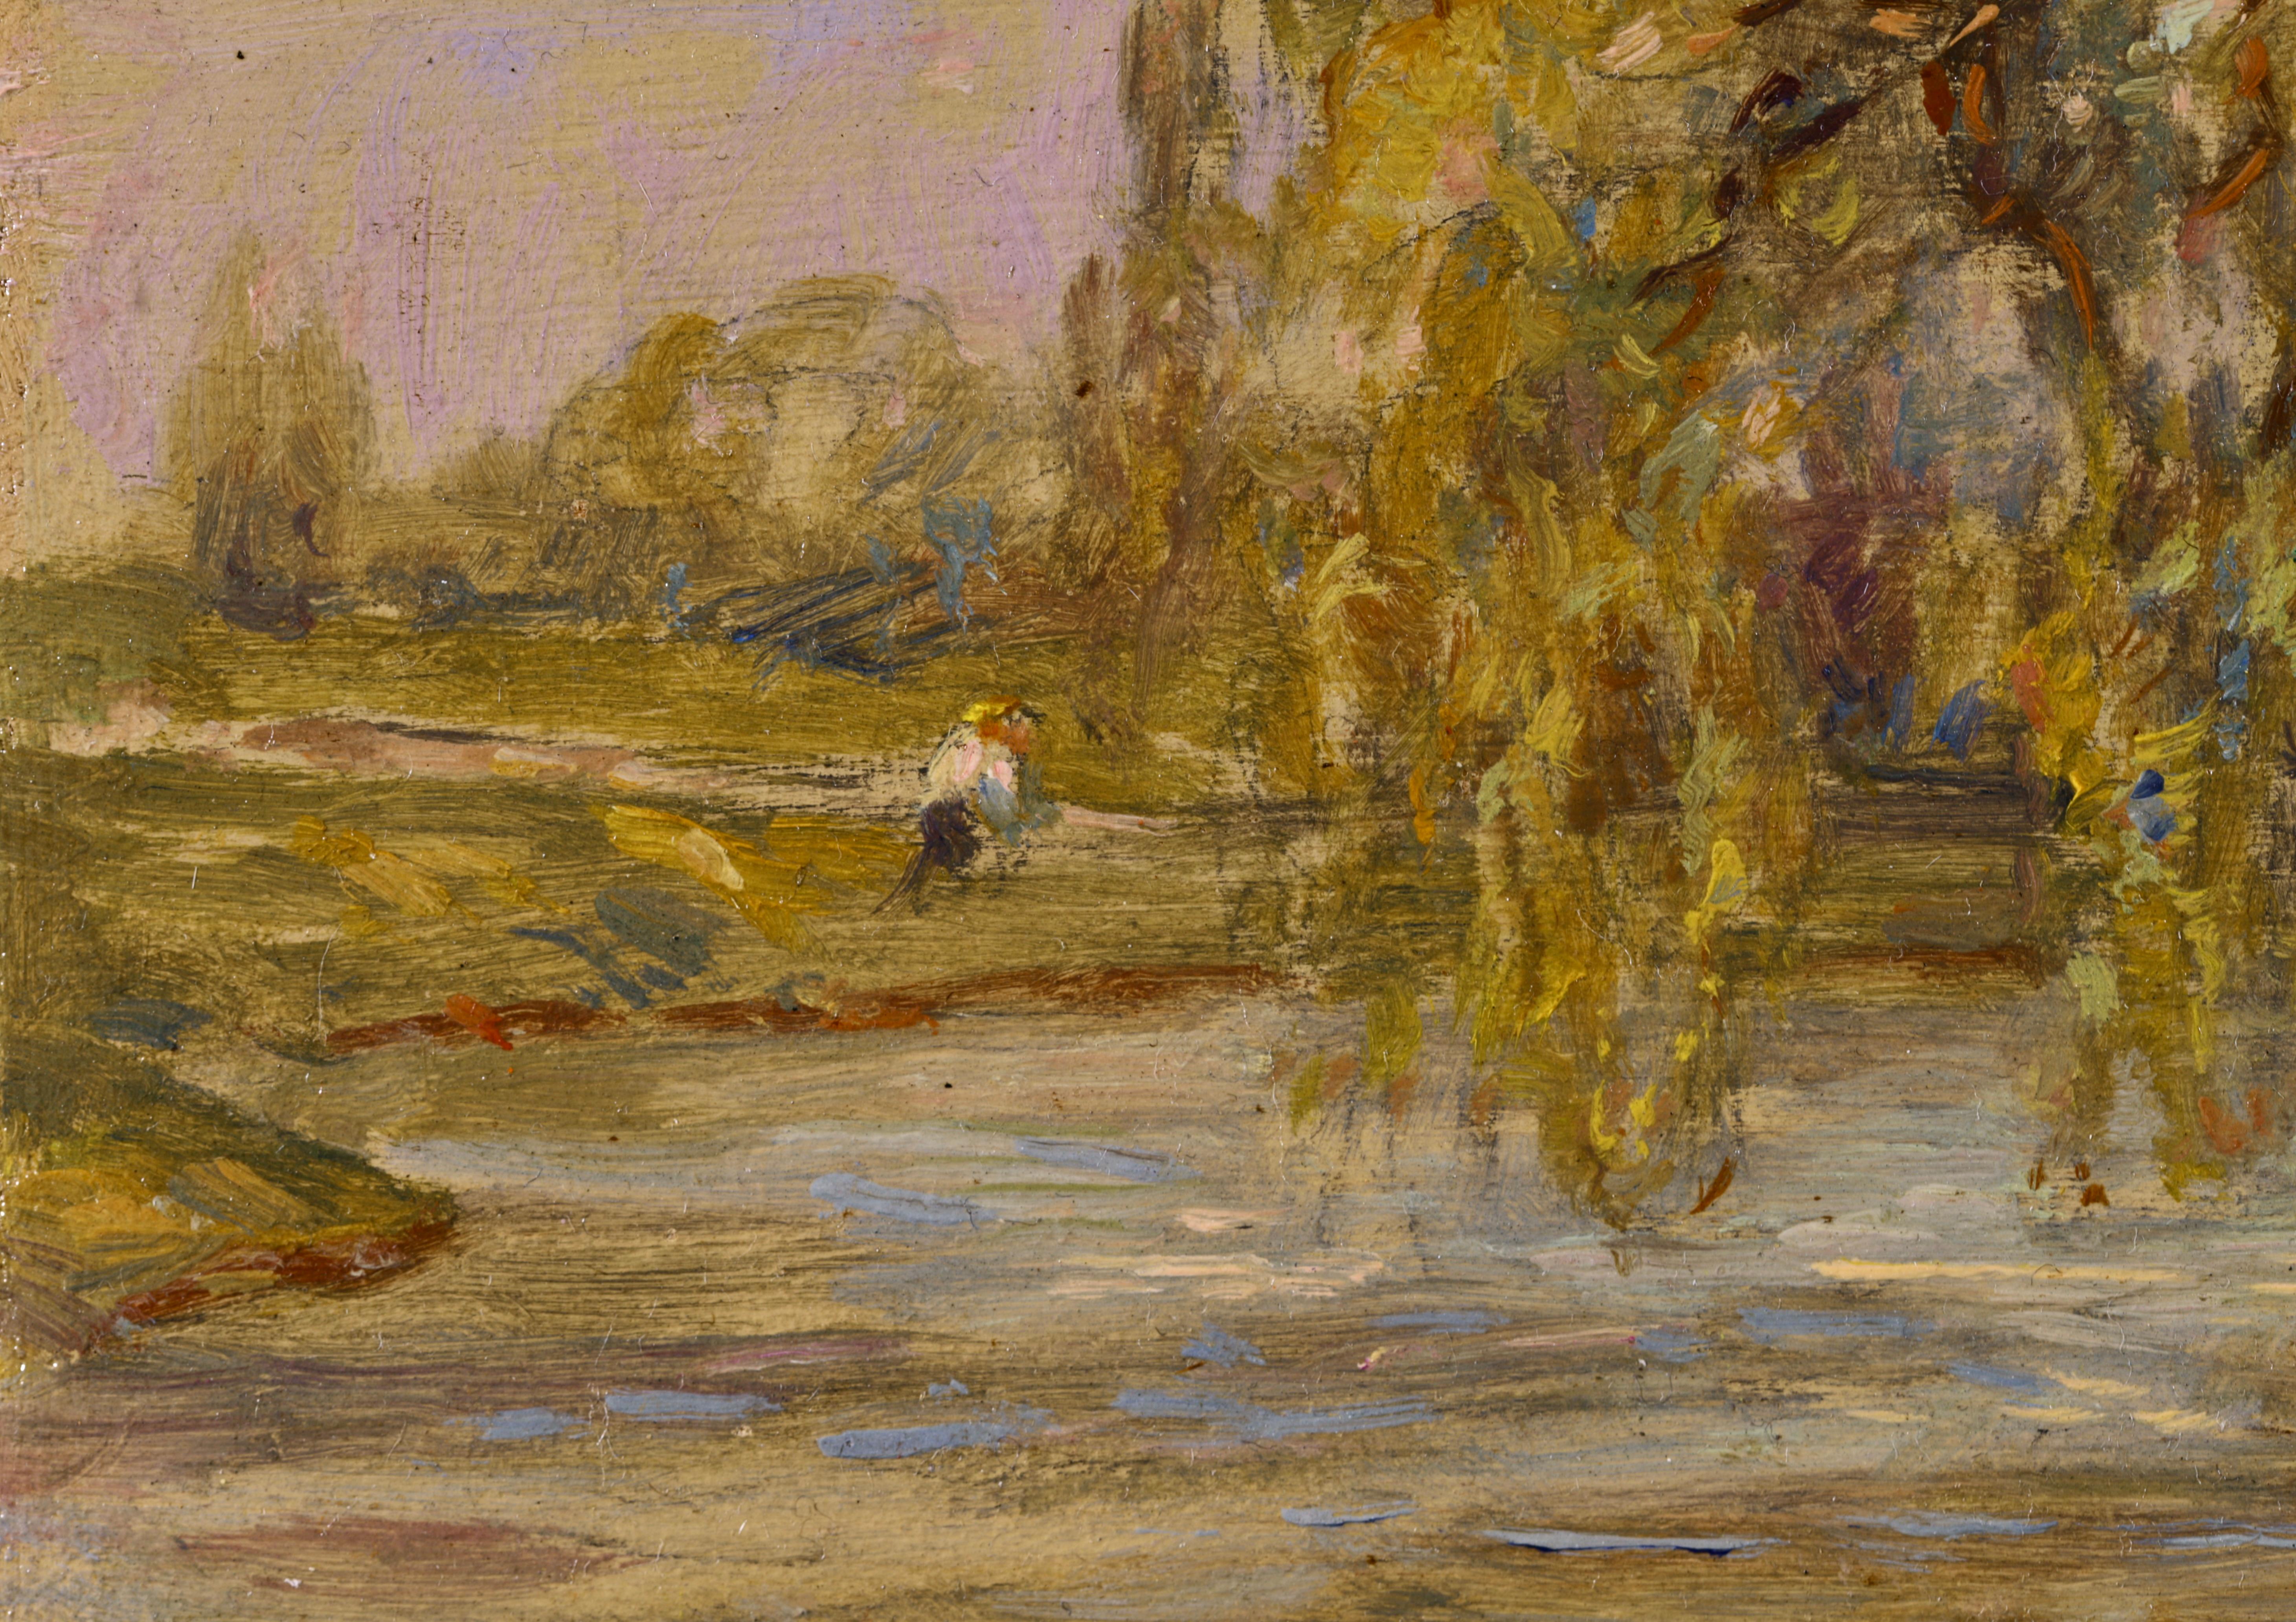 Punt on a River - Impressionist Oil, Figures by River Landscape by Henri Duhem For Sale 5